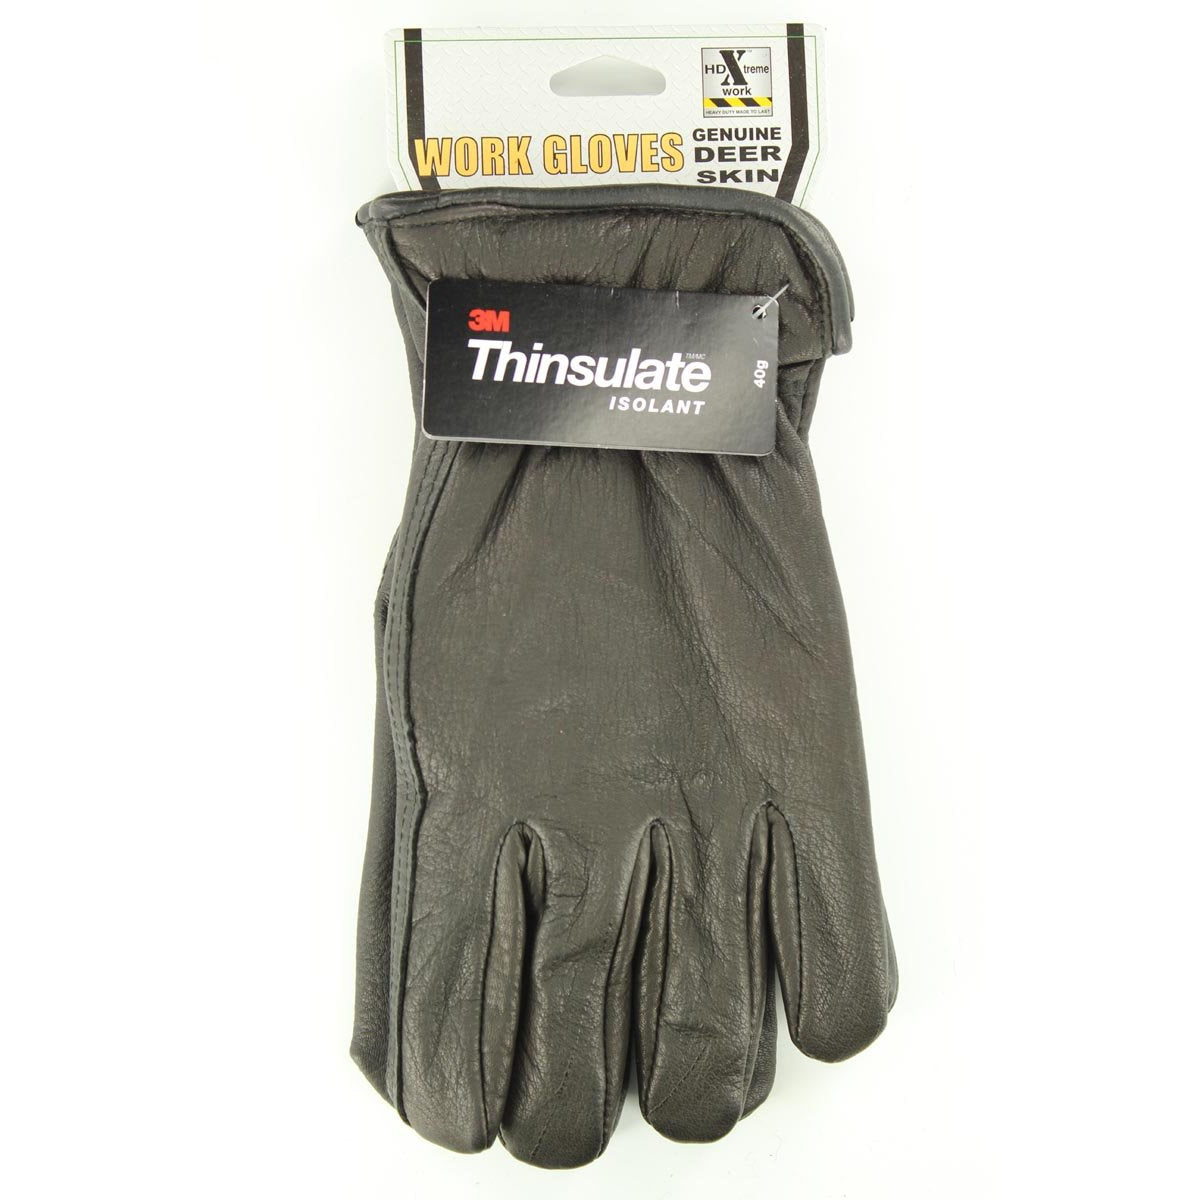 HDX Men's Deerskin Lined Gloves - Black